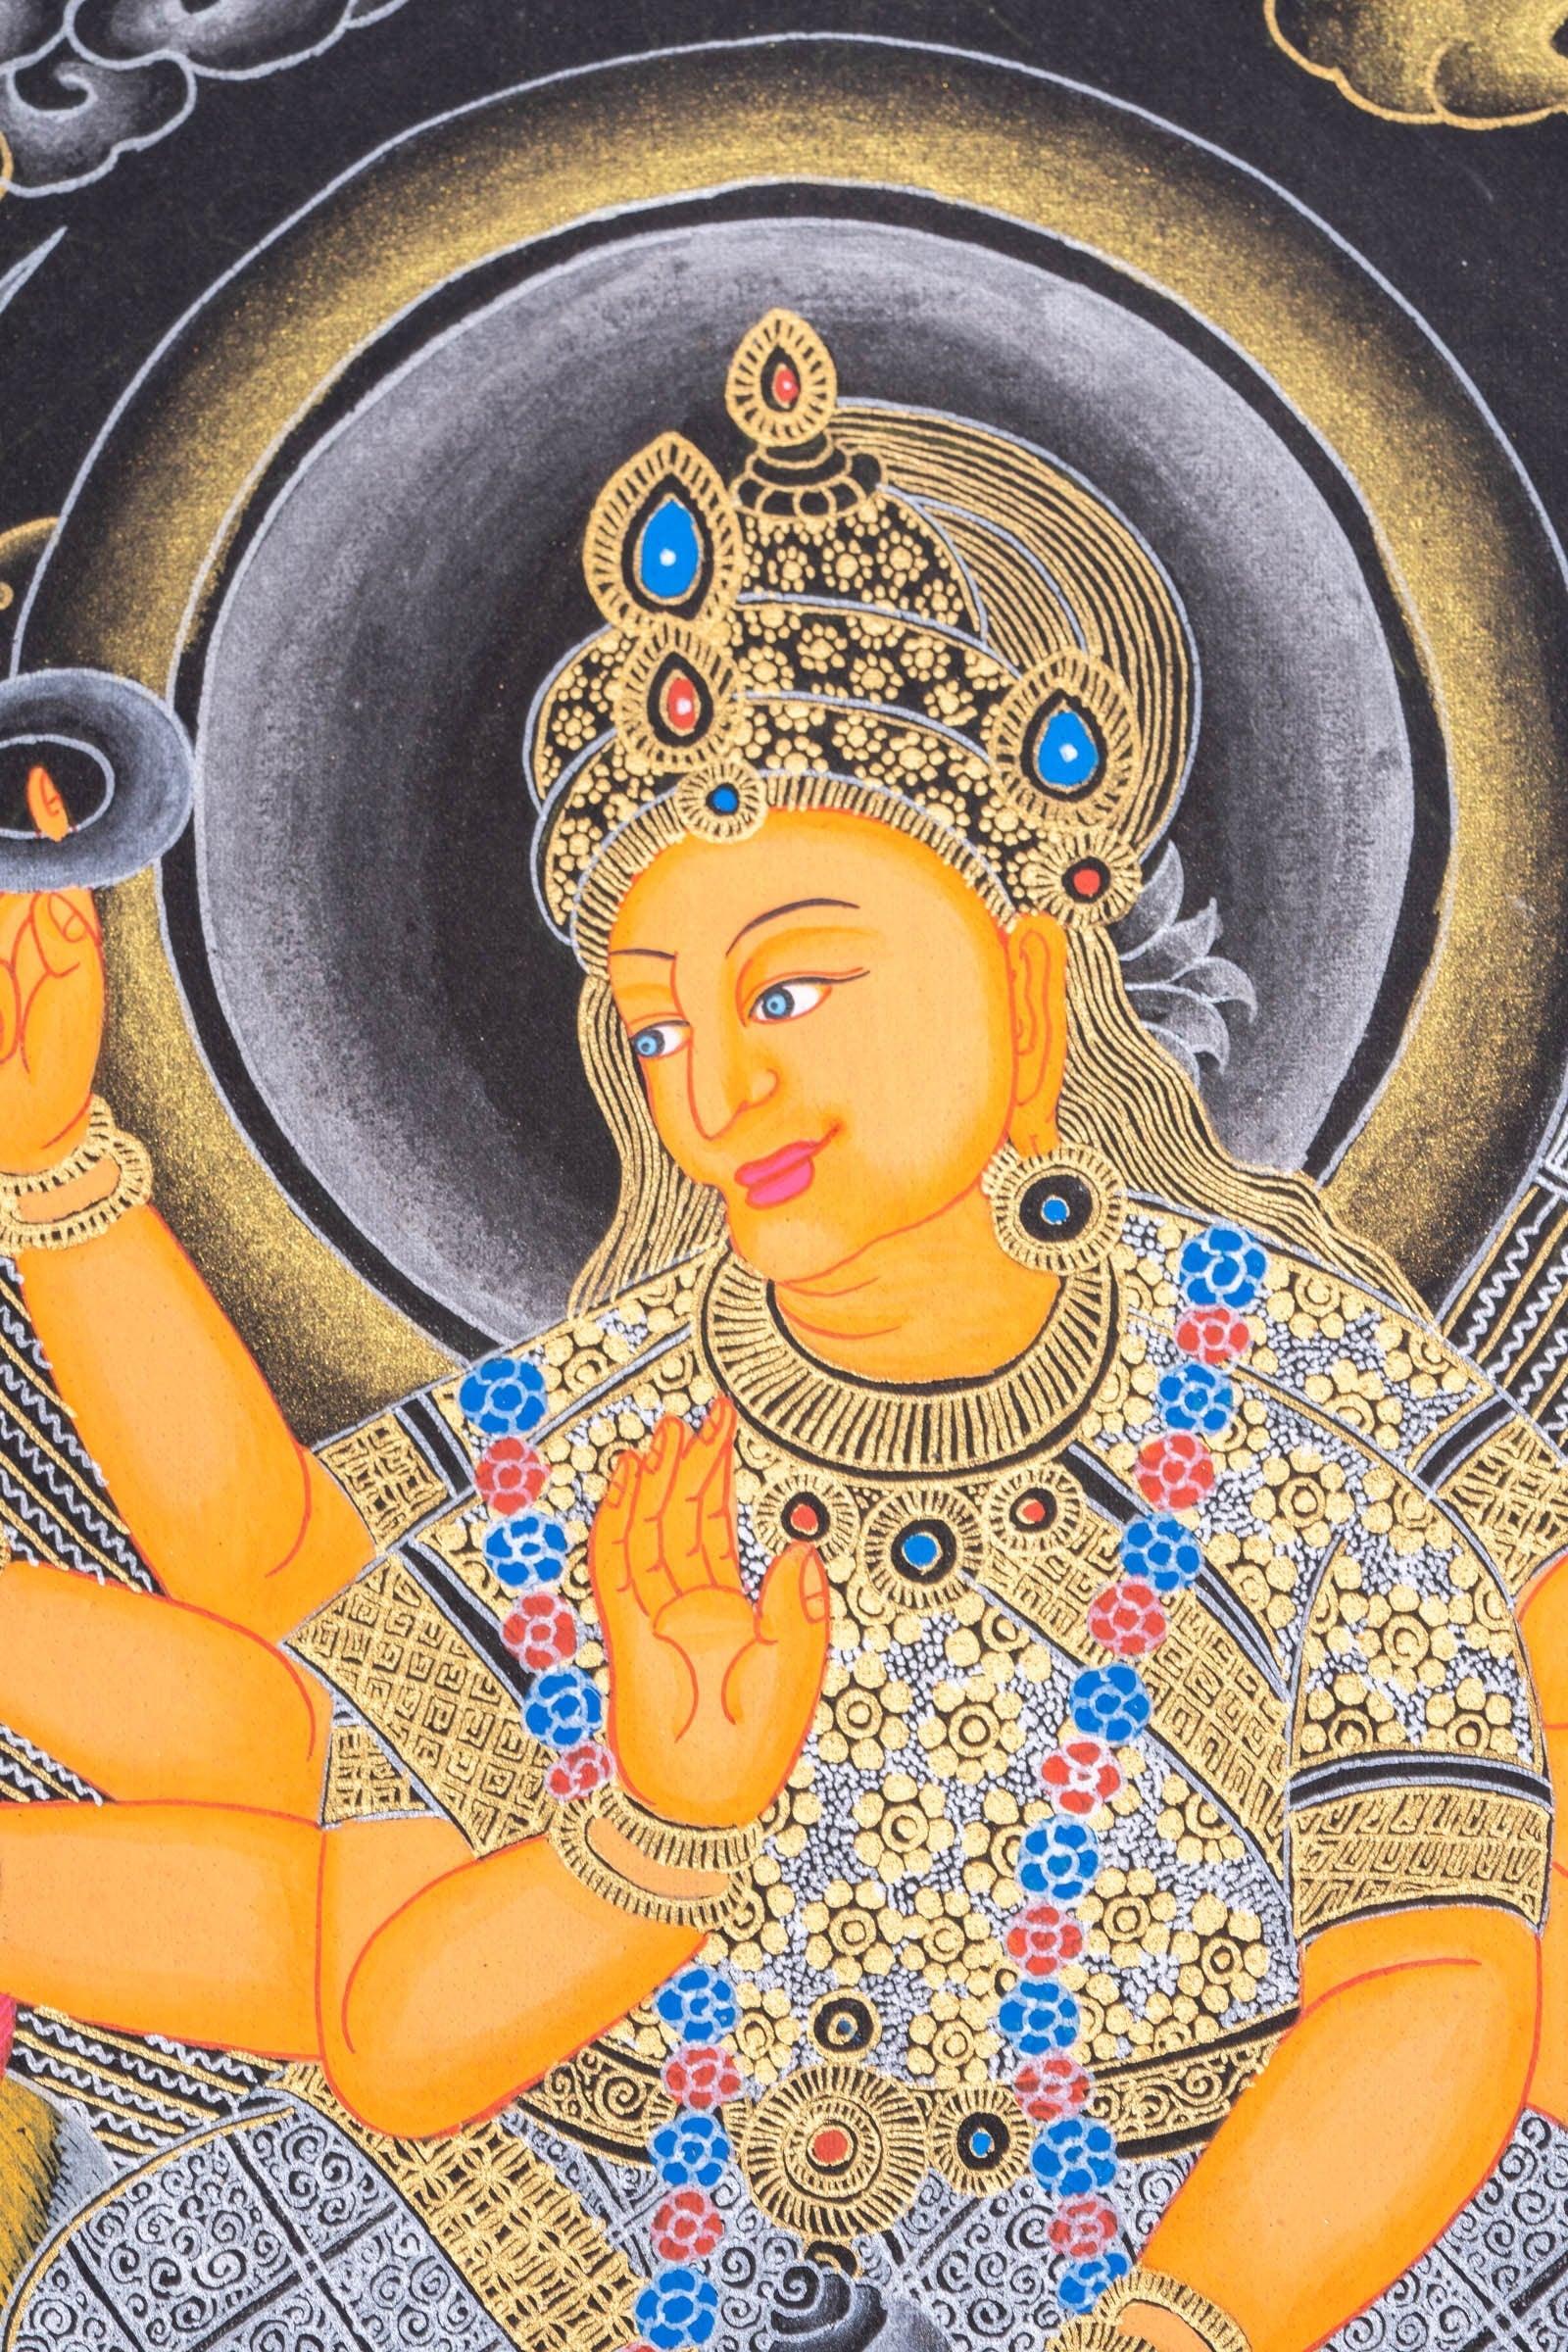 Thangka Painting of Durga Goddess